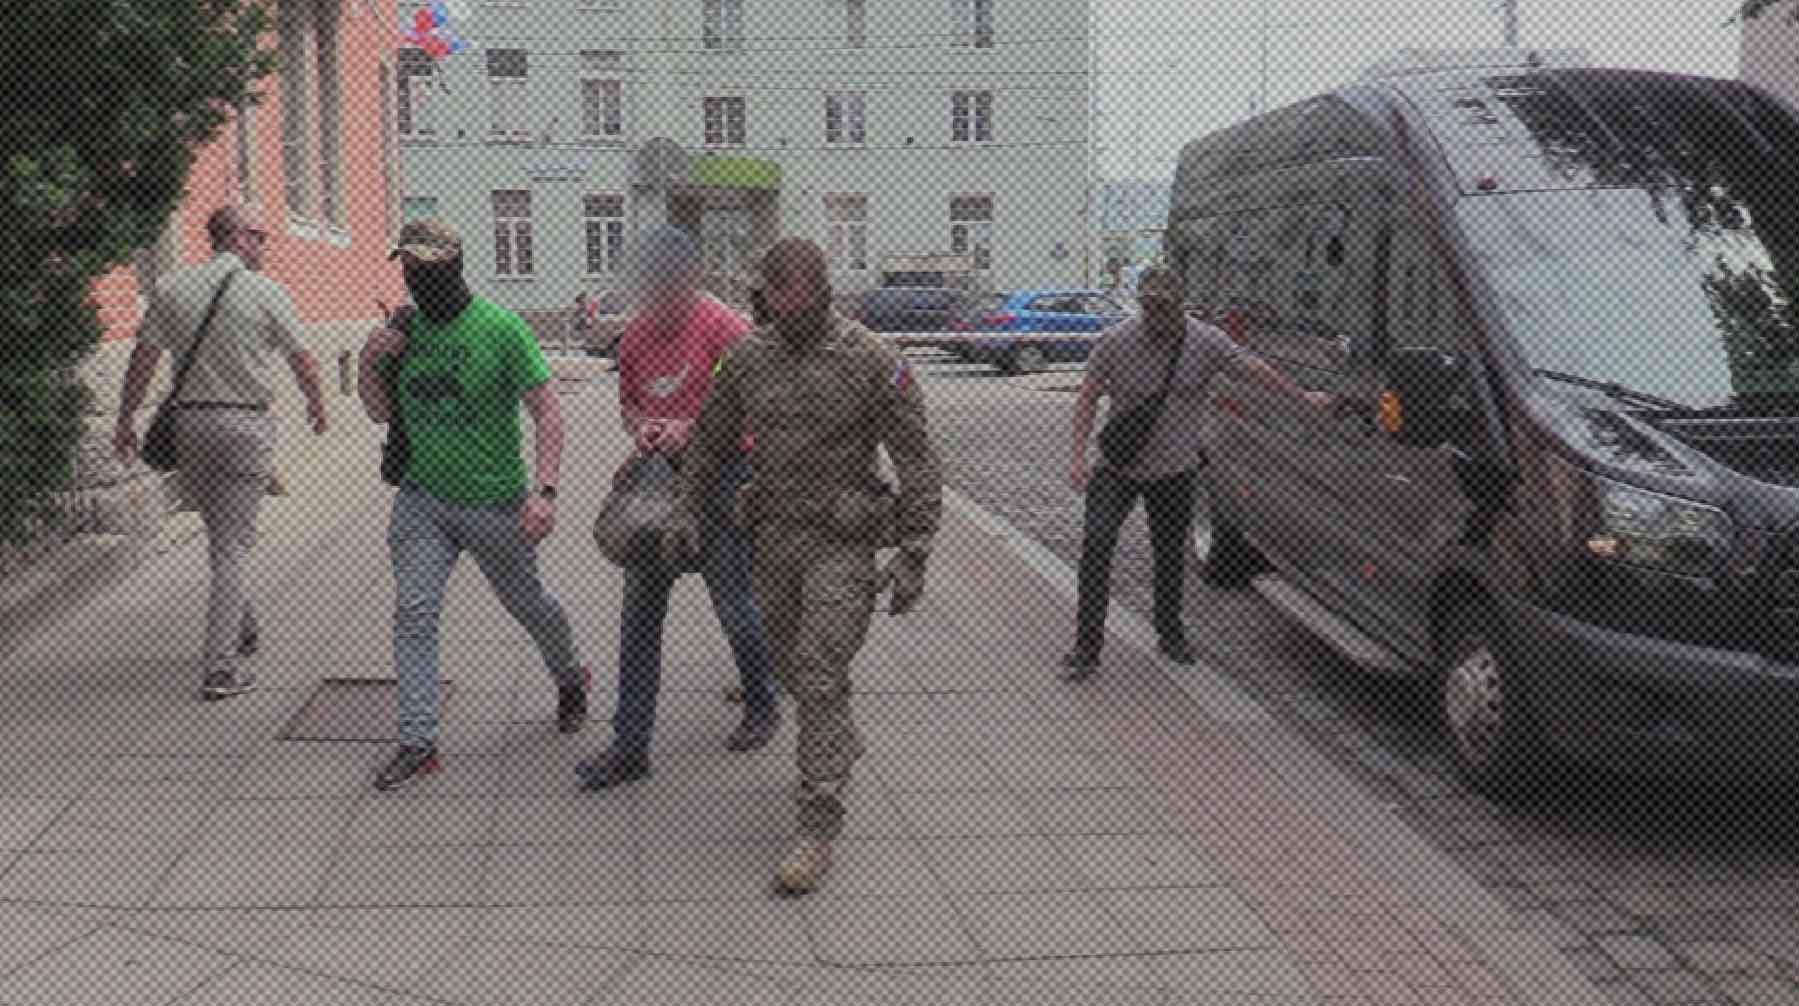 Dailystorm - ФСБ задержала в Калининграде сторонника «Азова», готовившего теракт в аэропорту